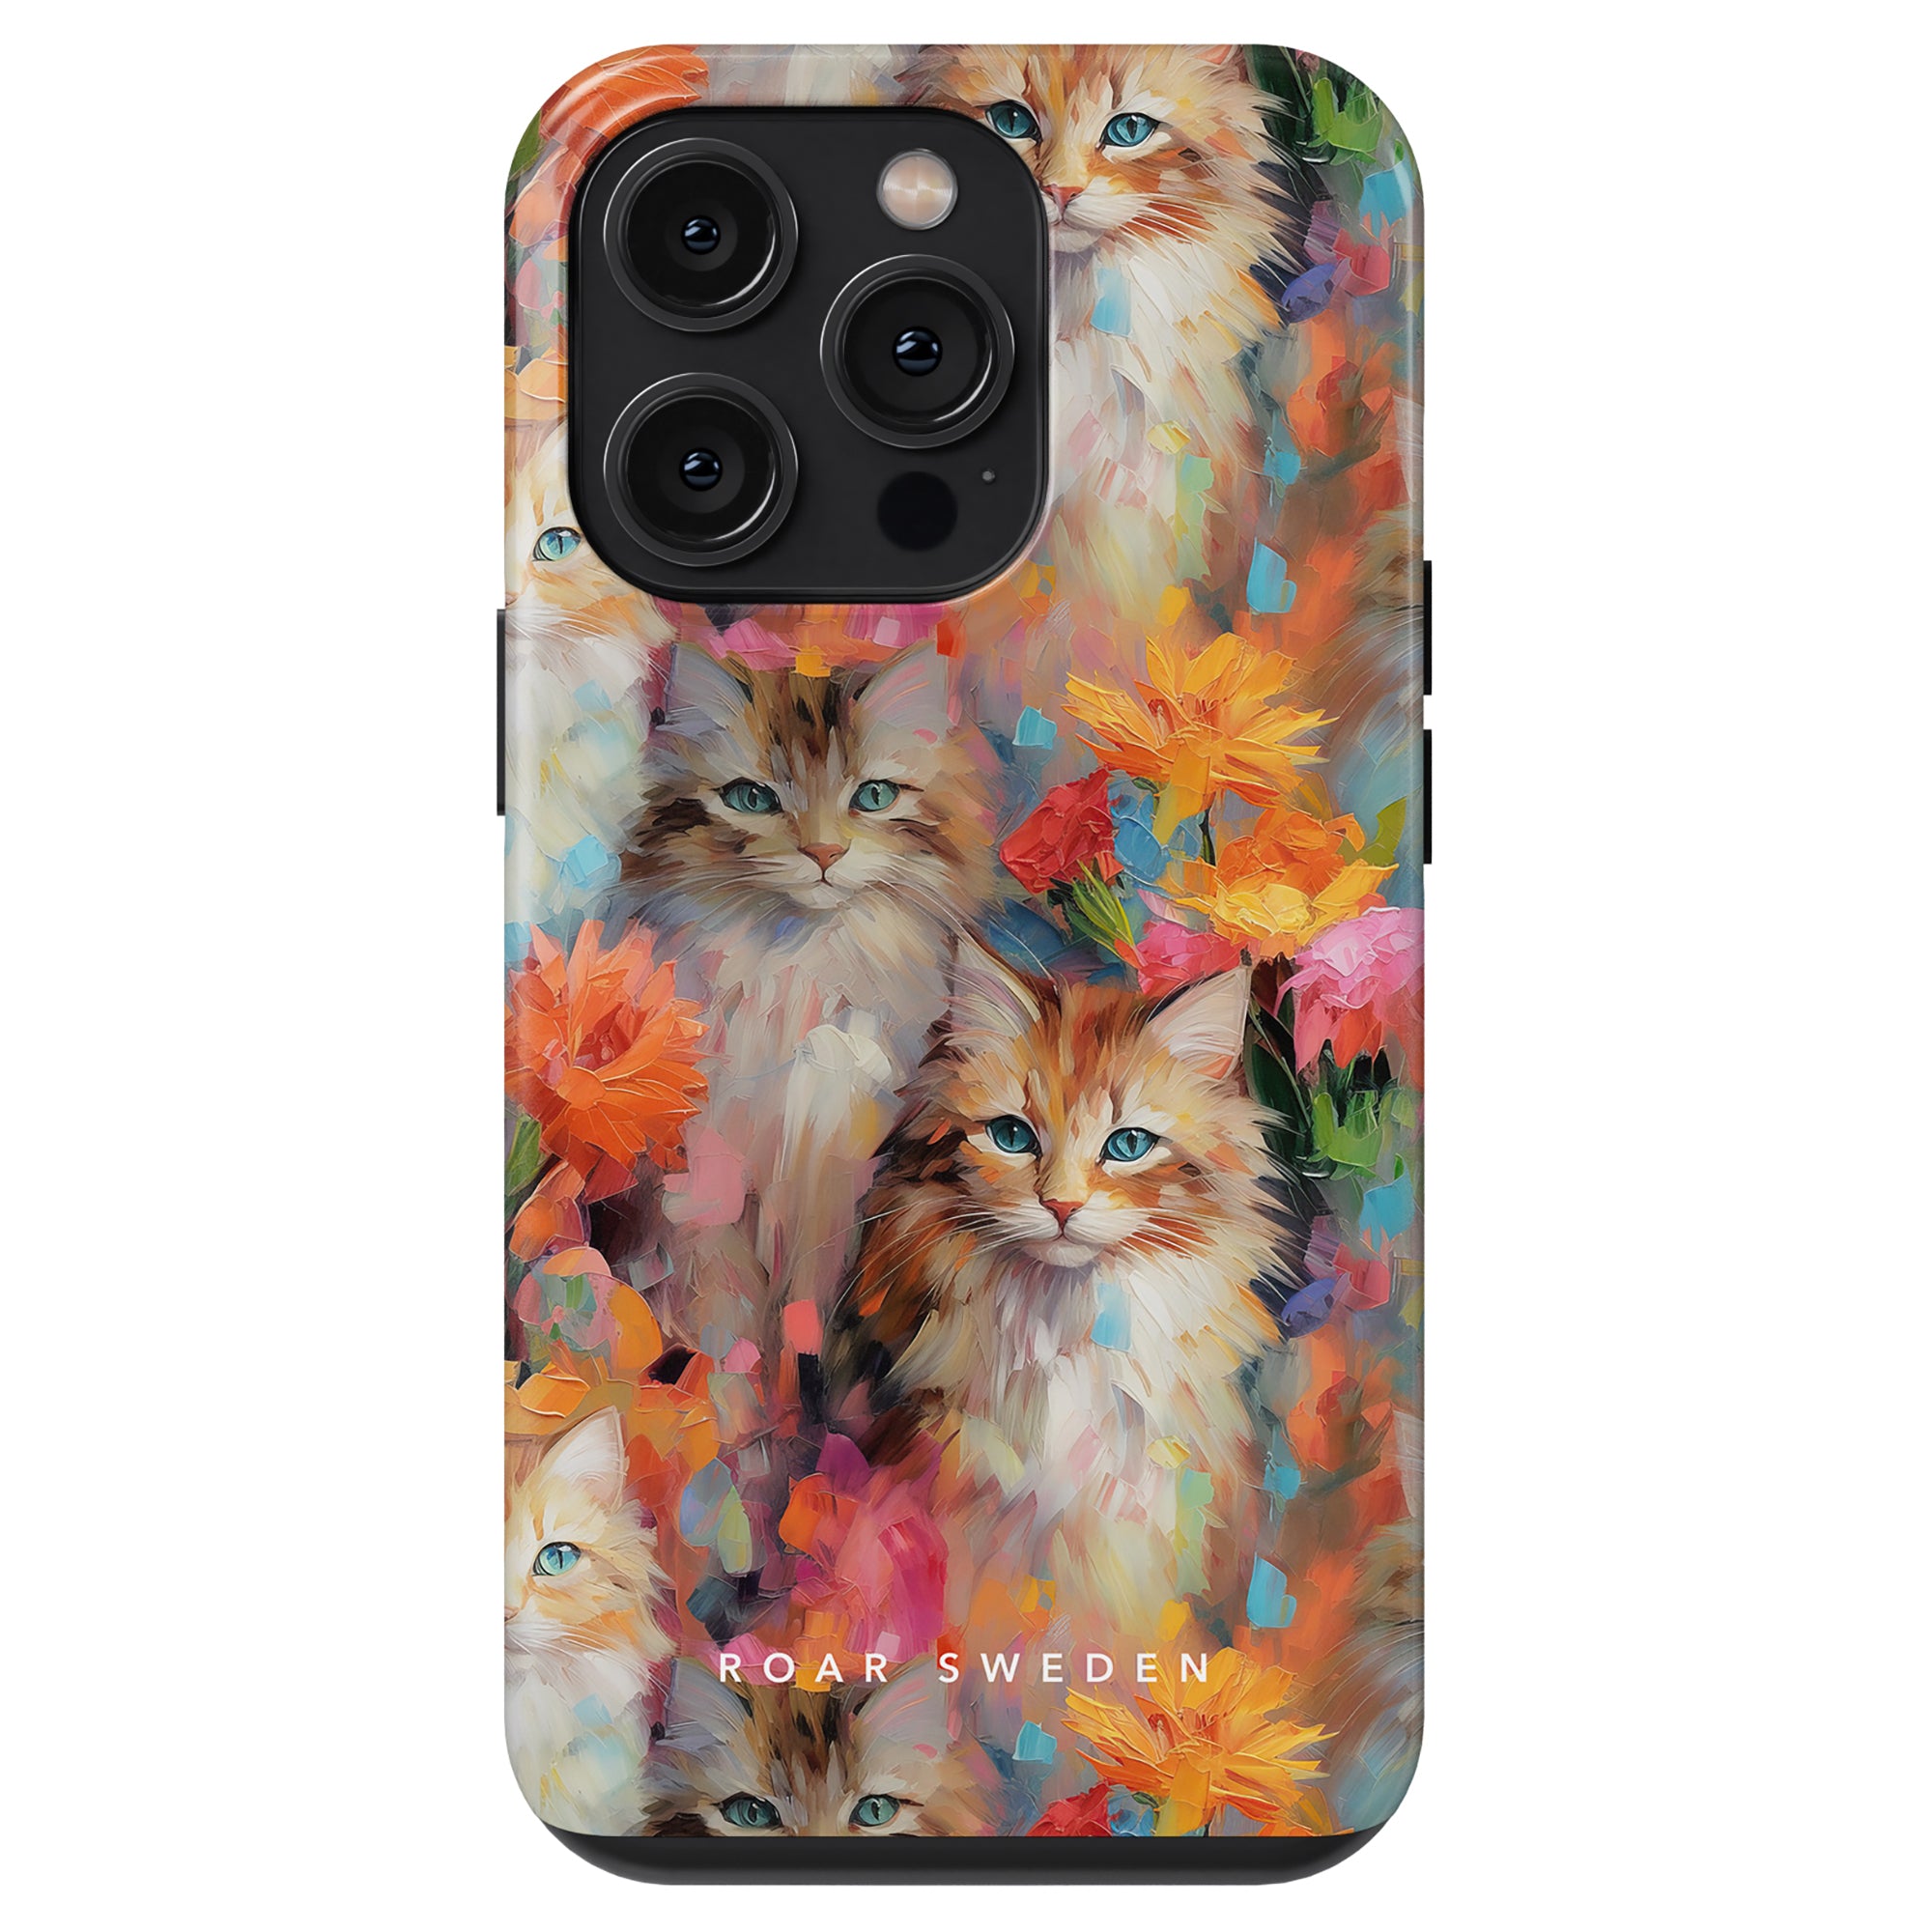 Detta trendiga Flower Kitty - Tough Case har en charmig design av katter och blommor, vilket skapar ett förtjusande och elegant tillbehör till din enhet.